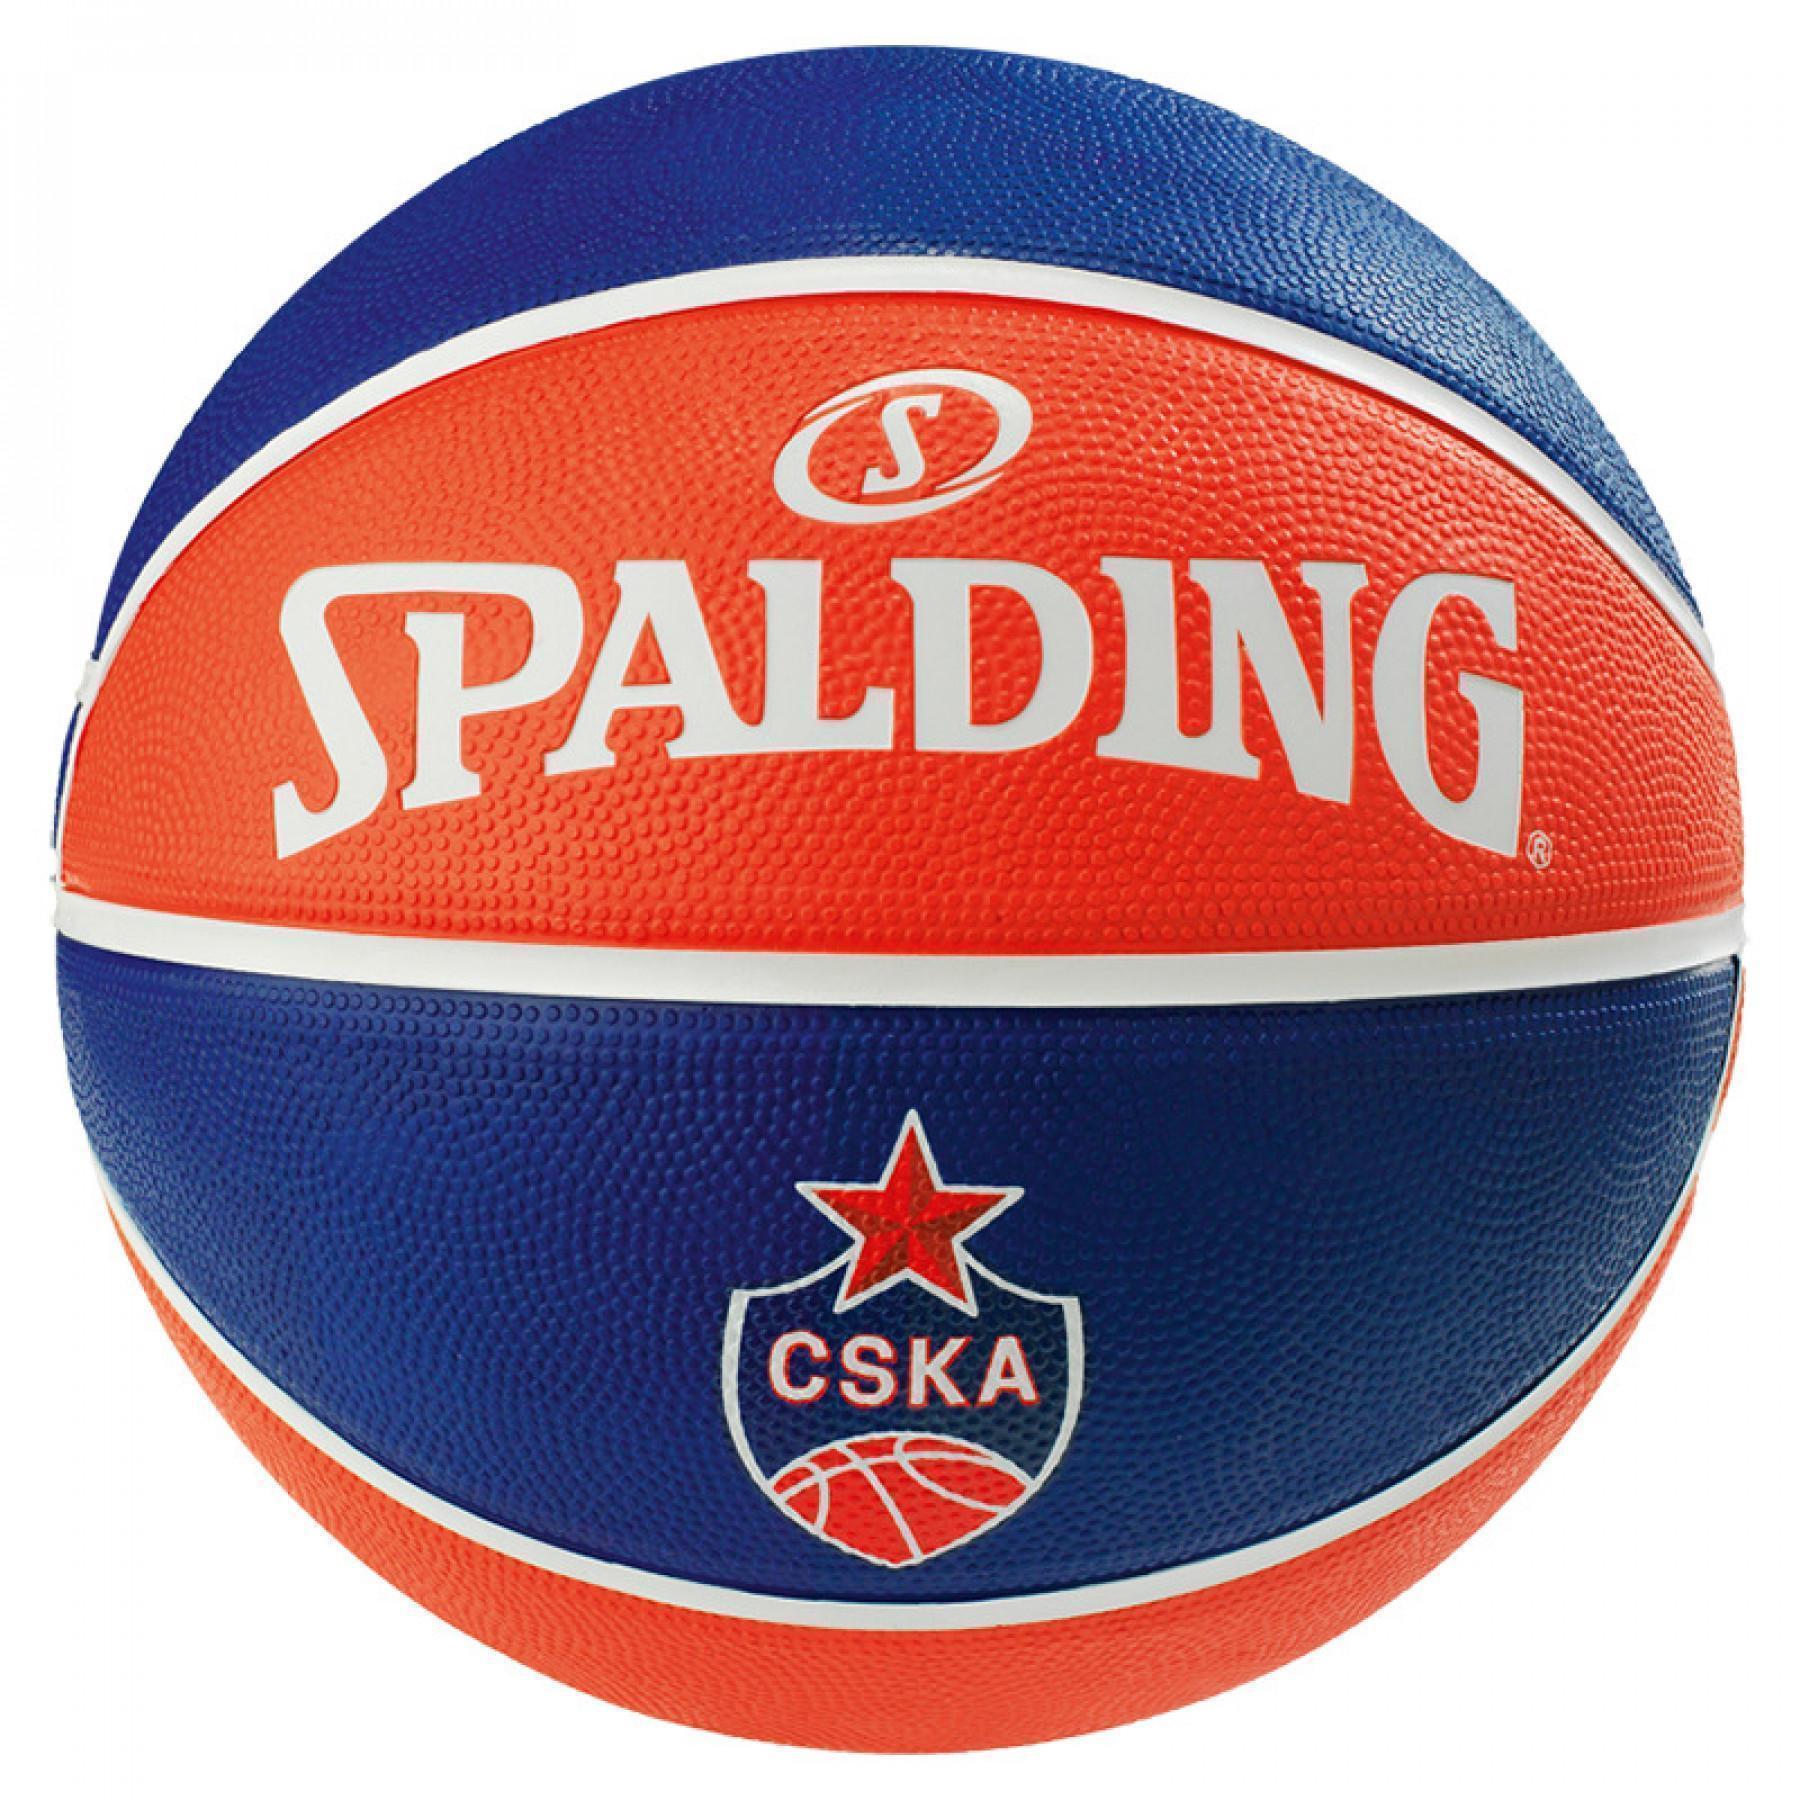 Balloon Spalding EL Team Cska Moscow (83-779z)